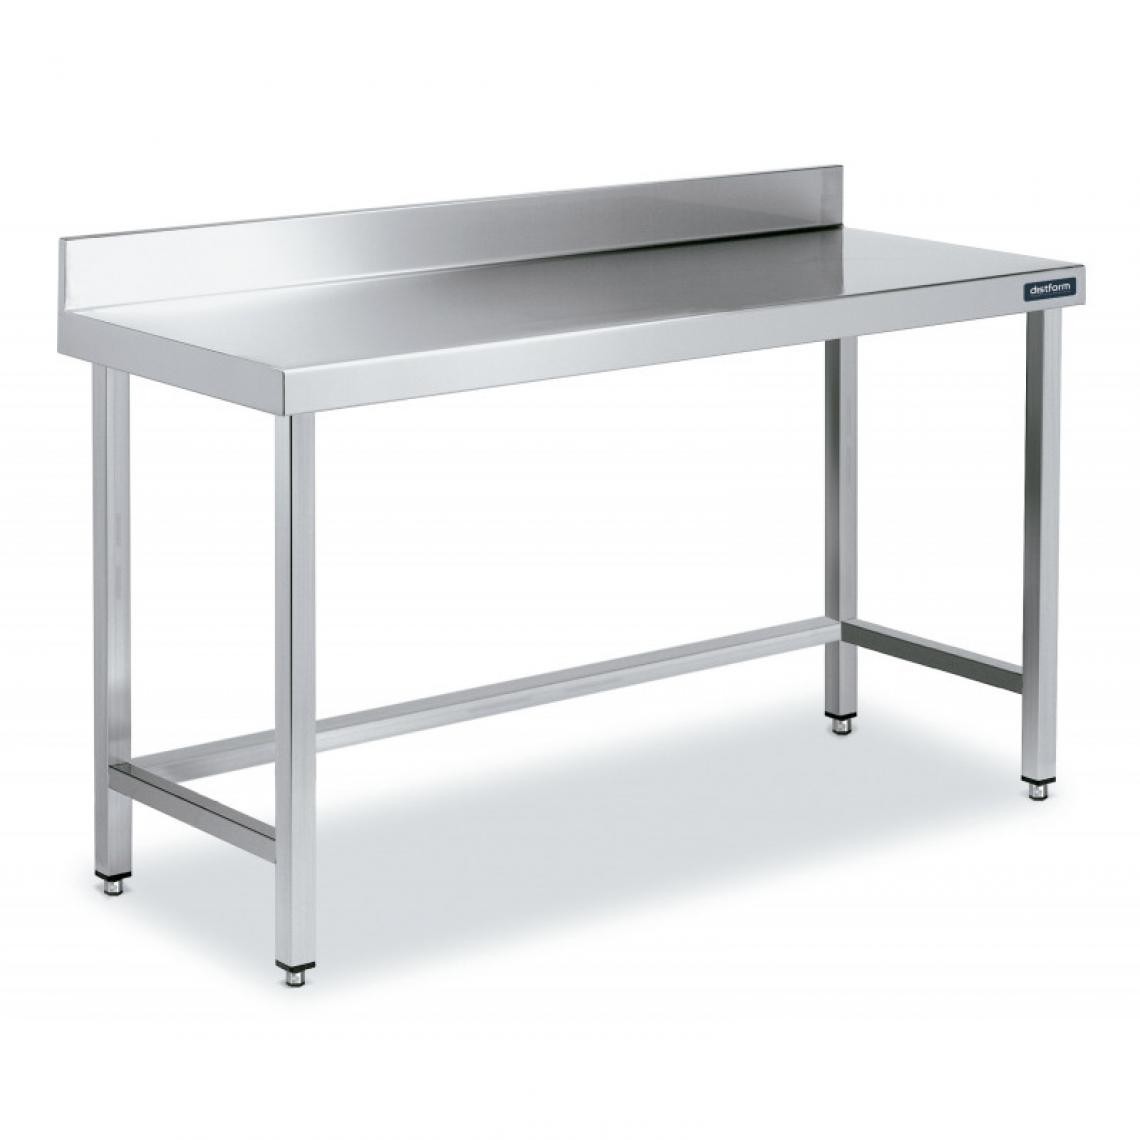 DISTFORM - Table Adossée en Inox avec Renforts Profondeur 700 mm - Distform - Acier inoxydable800x700 - Tables à manger